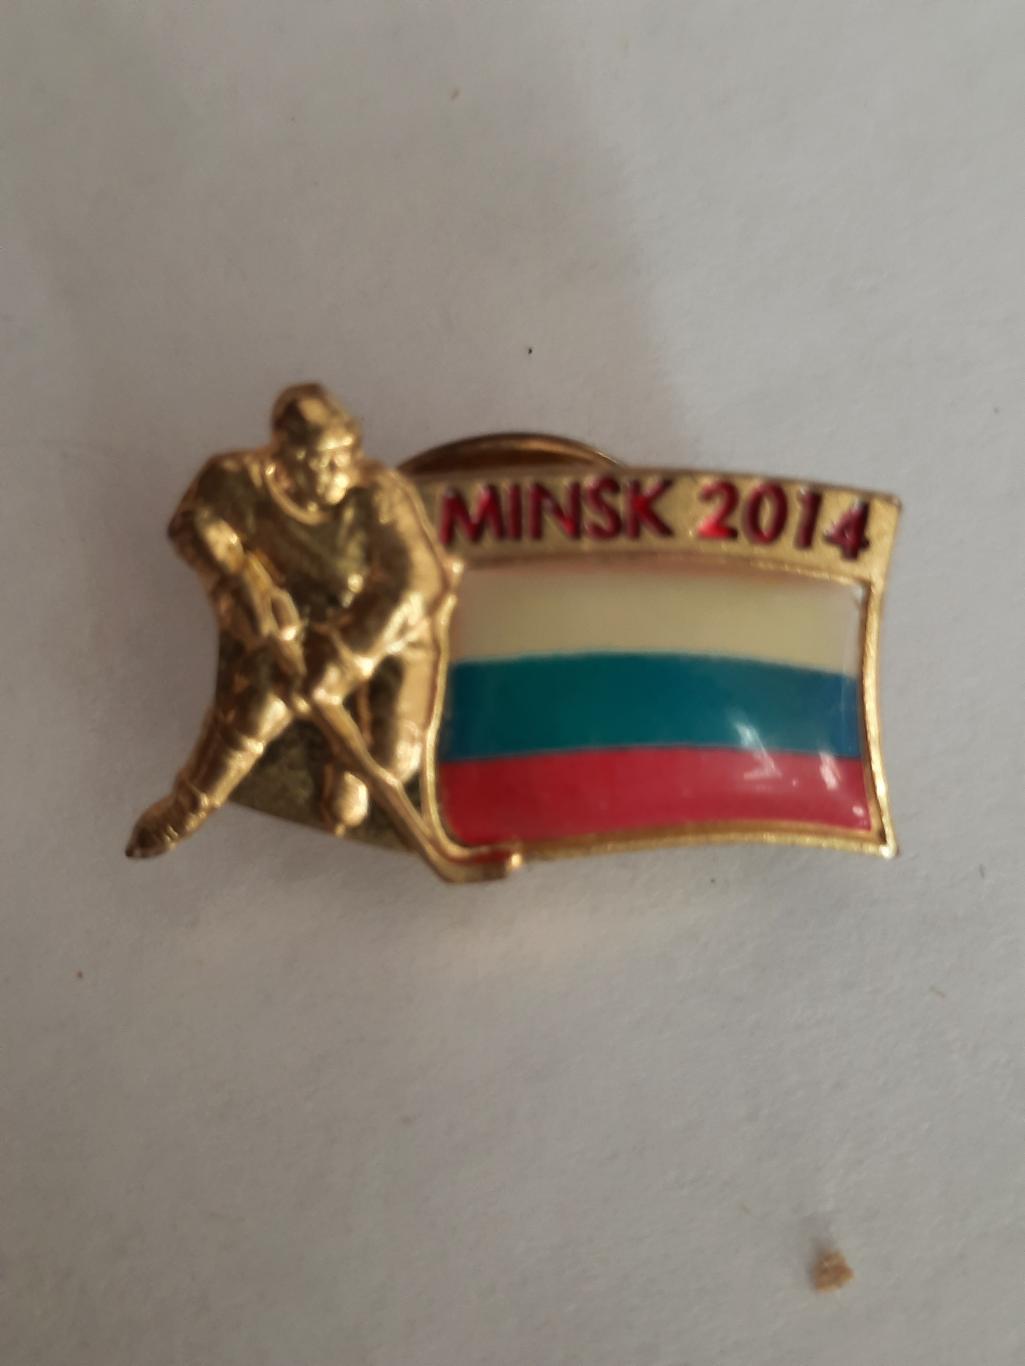 Официальный значок Чемпионата Мира по хоккею Беларусь 2014г